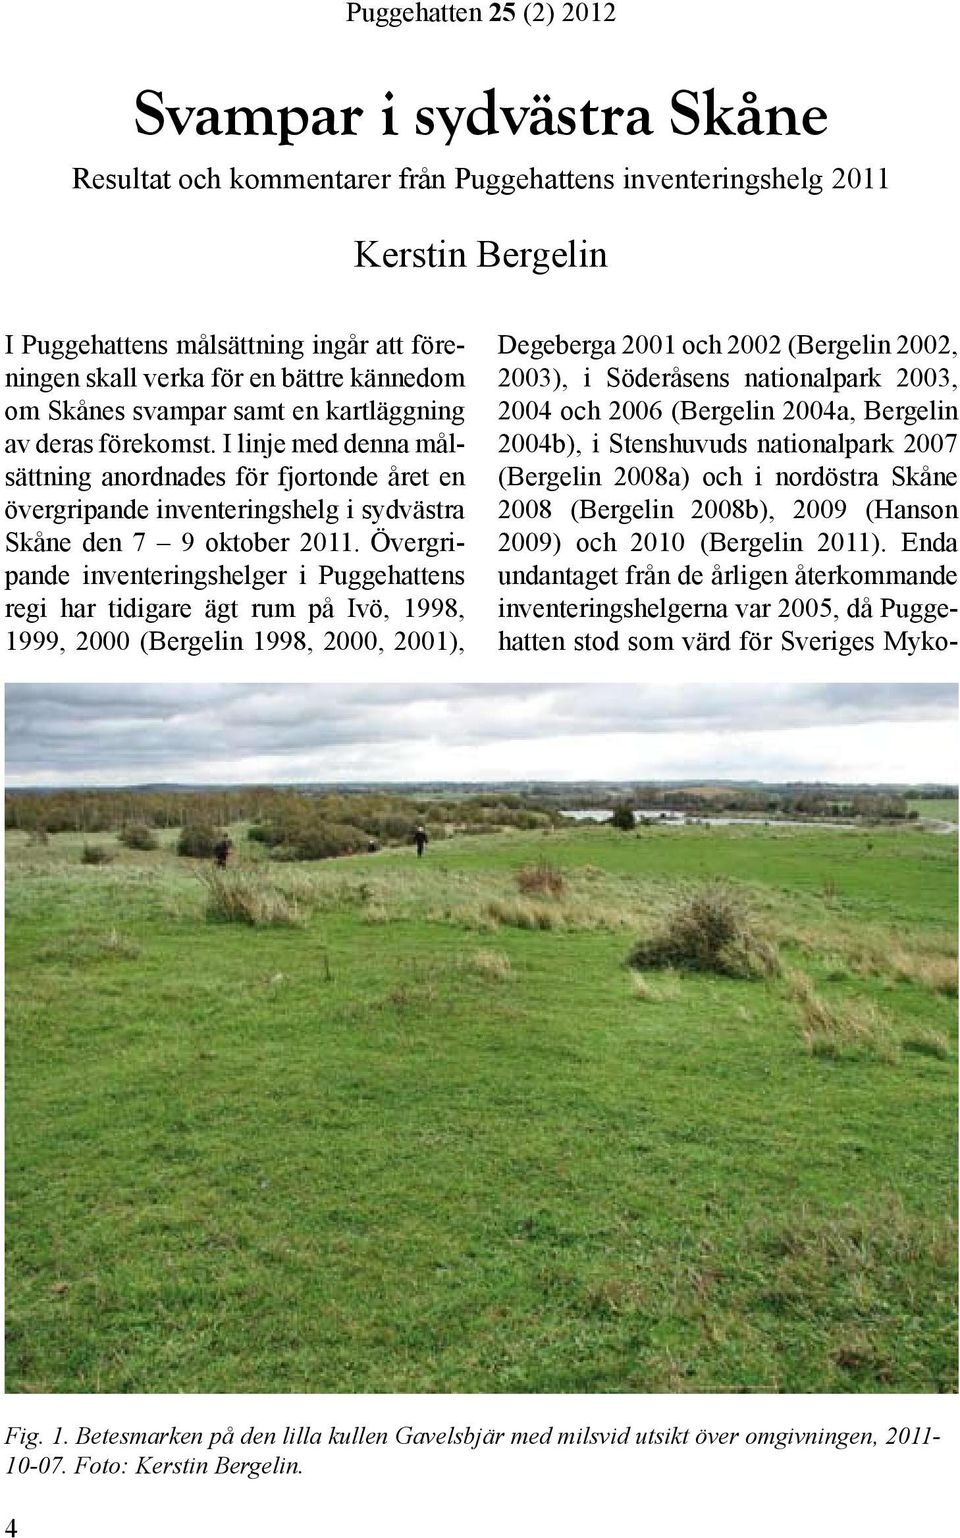 Övergripande inventeringshelger i Puggehattens regi har tidigare ägt rum på Ivö, 1998, 1999, 2000 (Bergelin 1998, 2000, 2001), Degeberga 2001 och 2002 (Bergelin 2002, 2003), i Söderåsens nationalpark